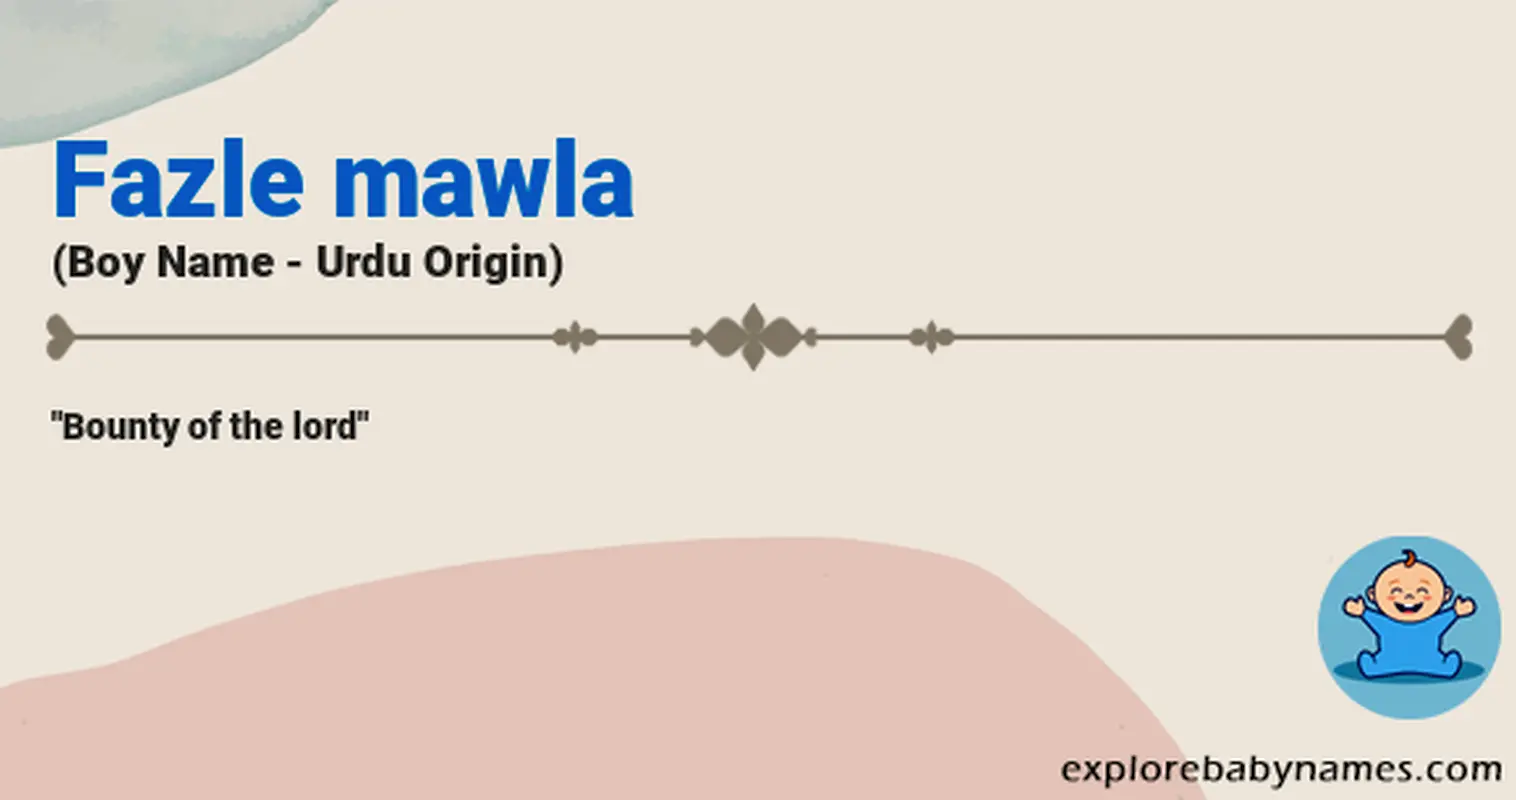 Meaning of Fazle mawla